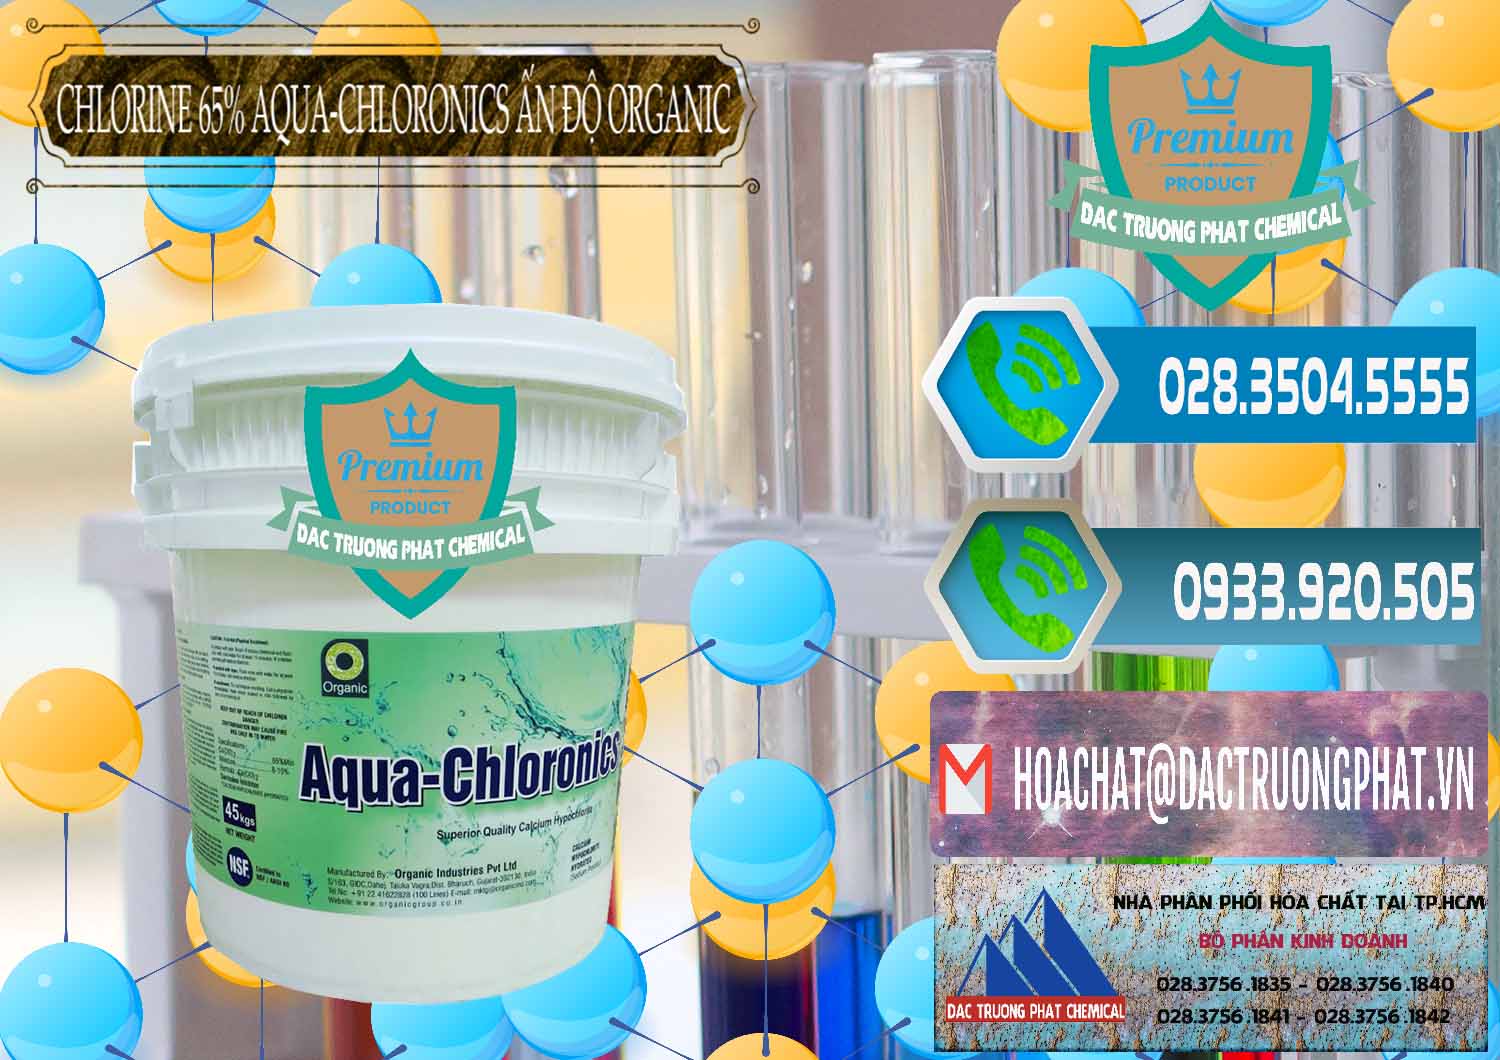 Nơi kinh doanh và bán Chlorine – Clorin 65% Aqua-Chloronics Ấn Độ Organic India - 0210 - Nơi cung cấp - kinh doanh hóa chất tại TP.HCM - congtyhoachat.net